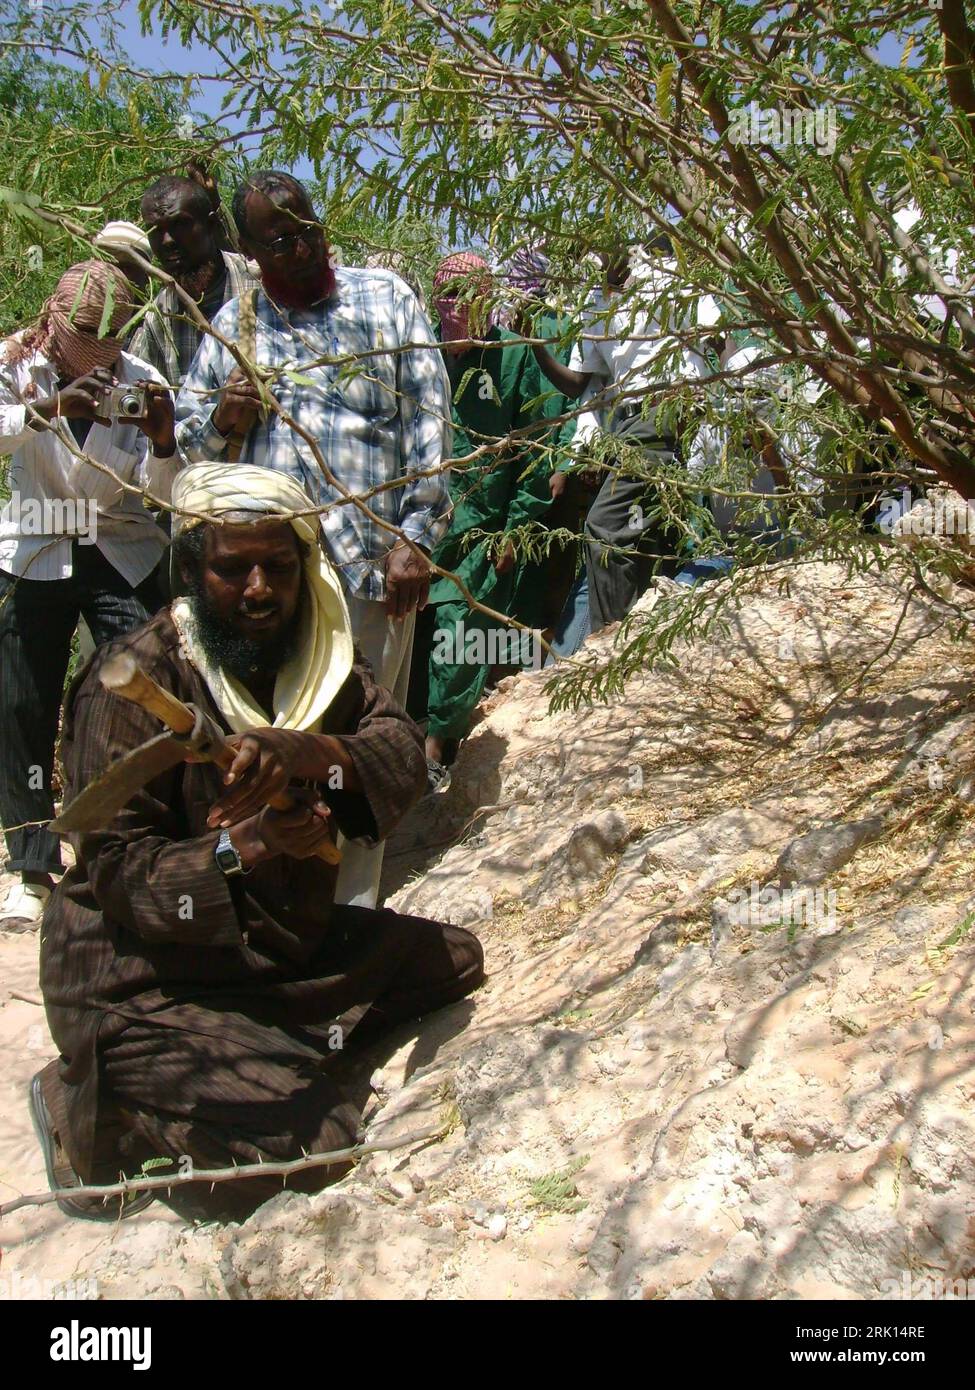 Bildnummer: 52854180  Datum: 19.01.2009  Copyright: imago/Xinhua Sheik Muqtar Robow (auch: Abu Mansur/Sprecher Islamische al-Shahab Militia) während einer Minenräumung seiner Organisation im von äthiopischen Truppen geräumten Mogadischu - Somalia - PUBLICATIONxNOTxINxCHN , Personen; 2009,  Somalia, Mineräumung, Minensuche, Land, Leute, Suche, Räumung, Mine, Landmine, Politik; , hoch, Kbdig, Einzelbild, Islam, Religion, Randbild, People, Afrika    Bildnummer 52854180 Date 19 01 2009 Copyright Imago XINHUA Sheik   too Abu Mansur Spokesman Islamic Al Shahab Militia during a Demining his Organizat Stock Photo